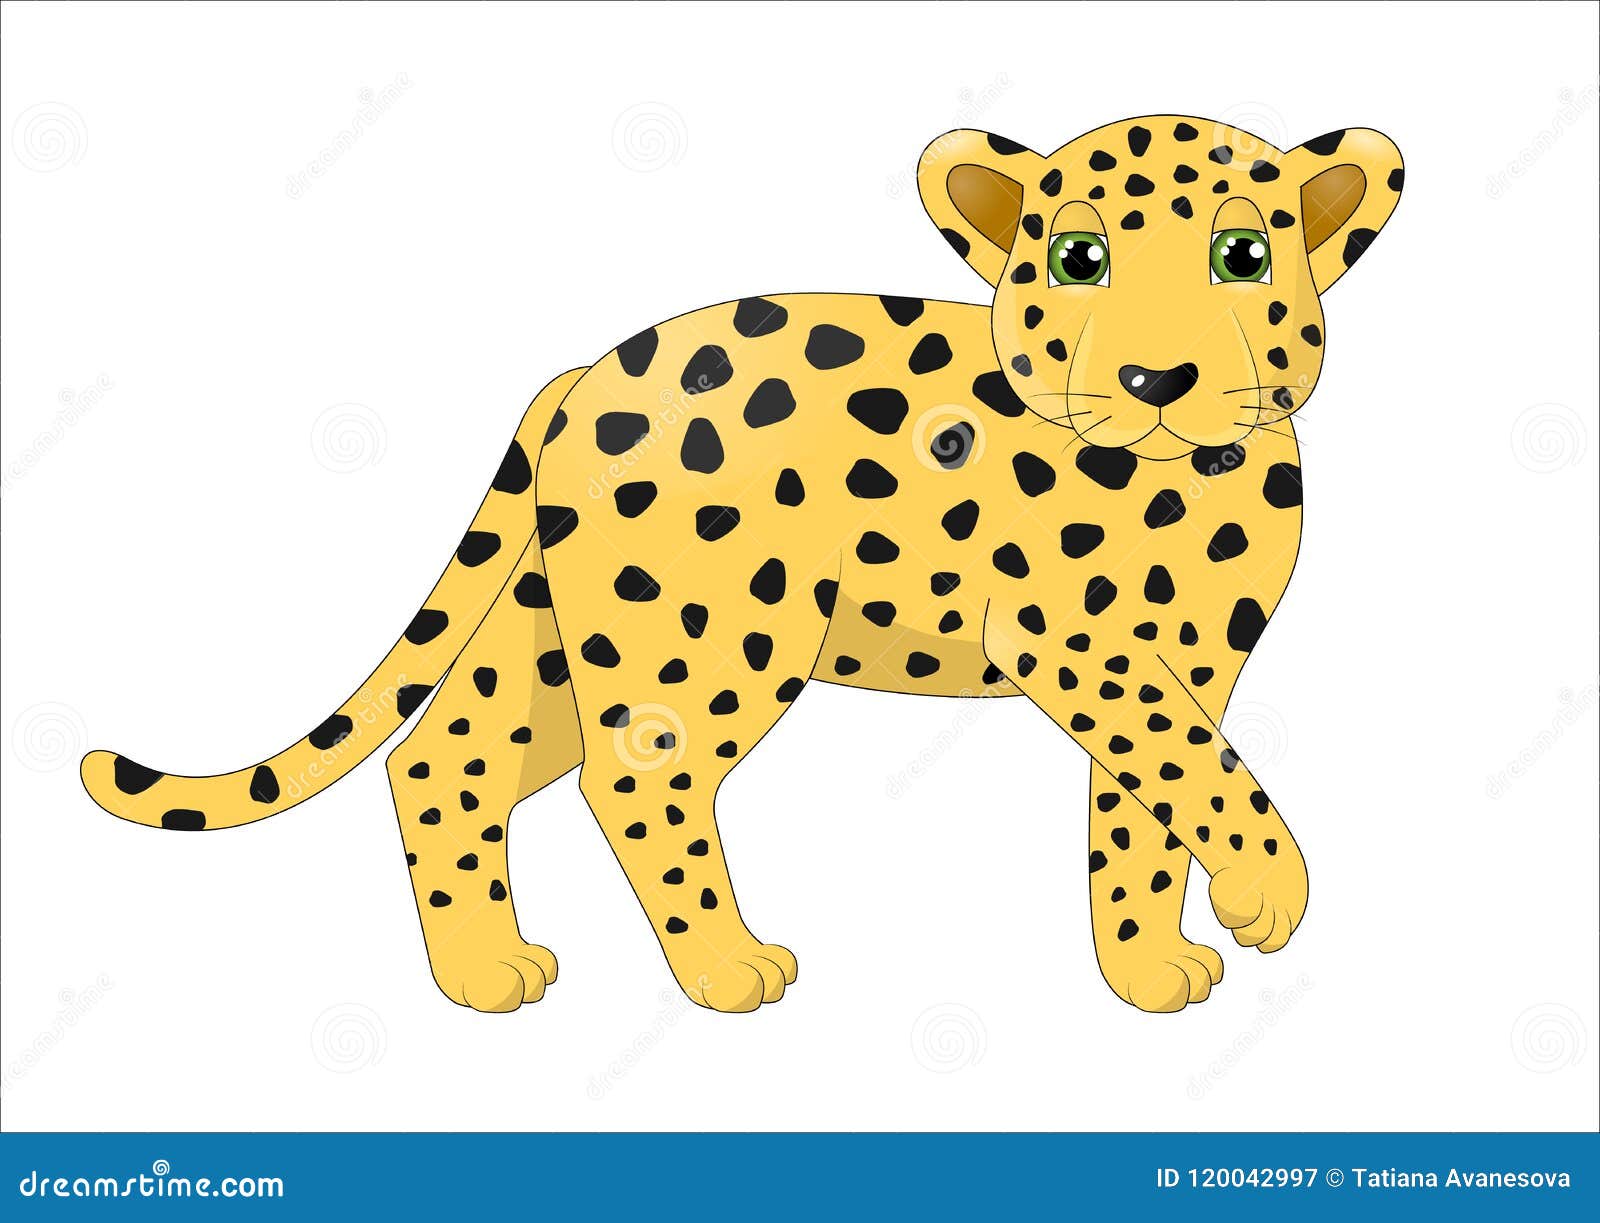 Cute cartoon leopard stock illustration. Illustration of spots - 120042997